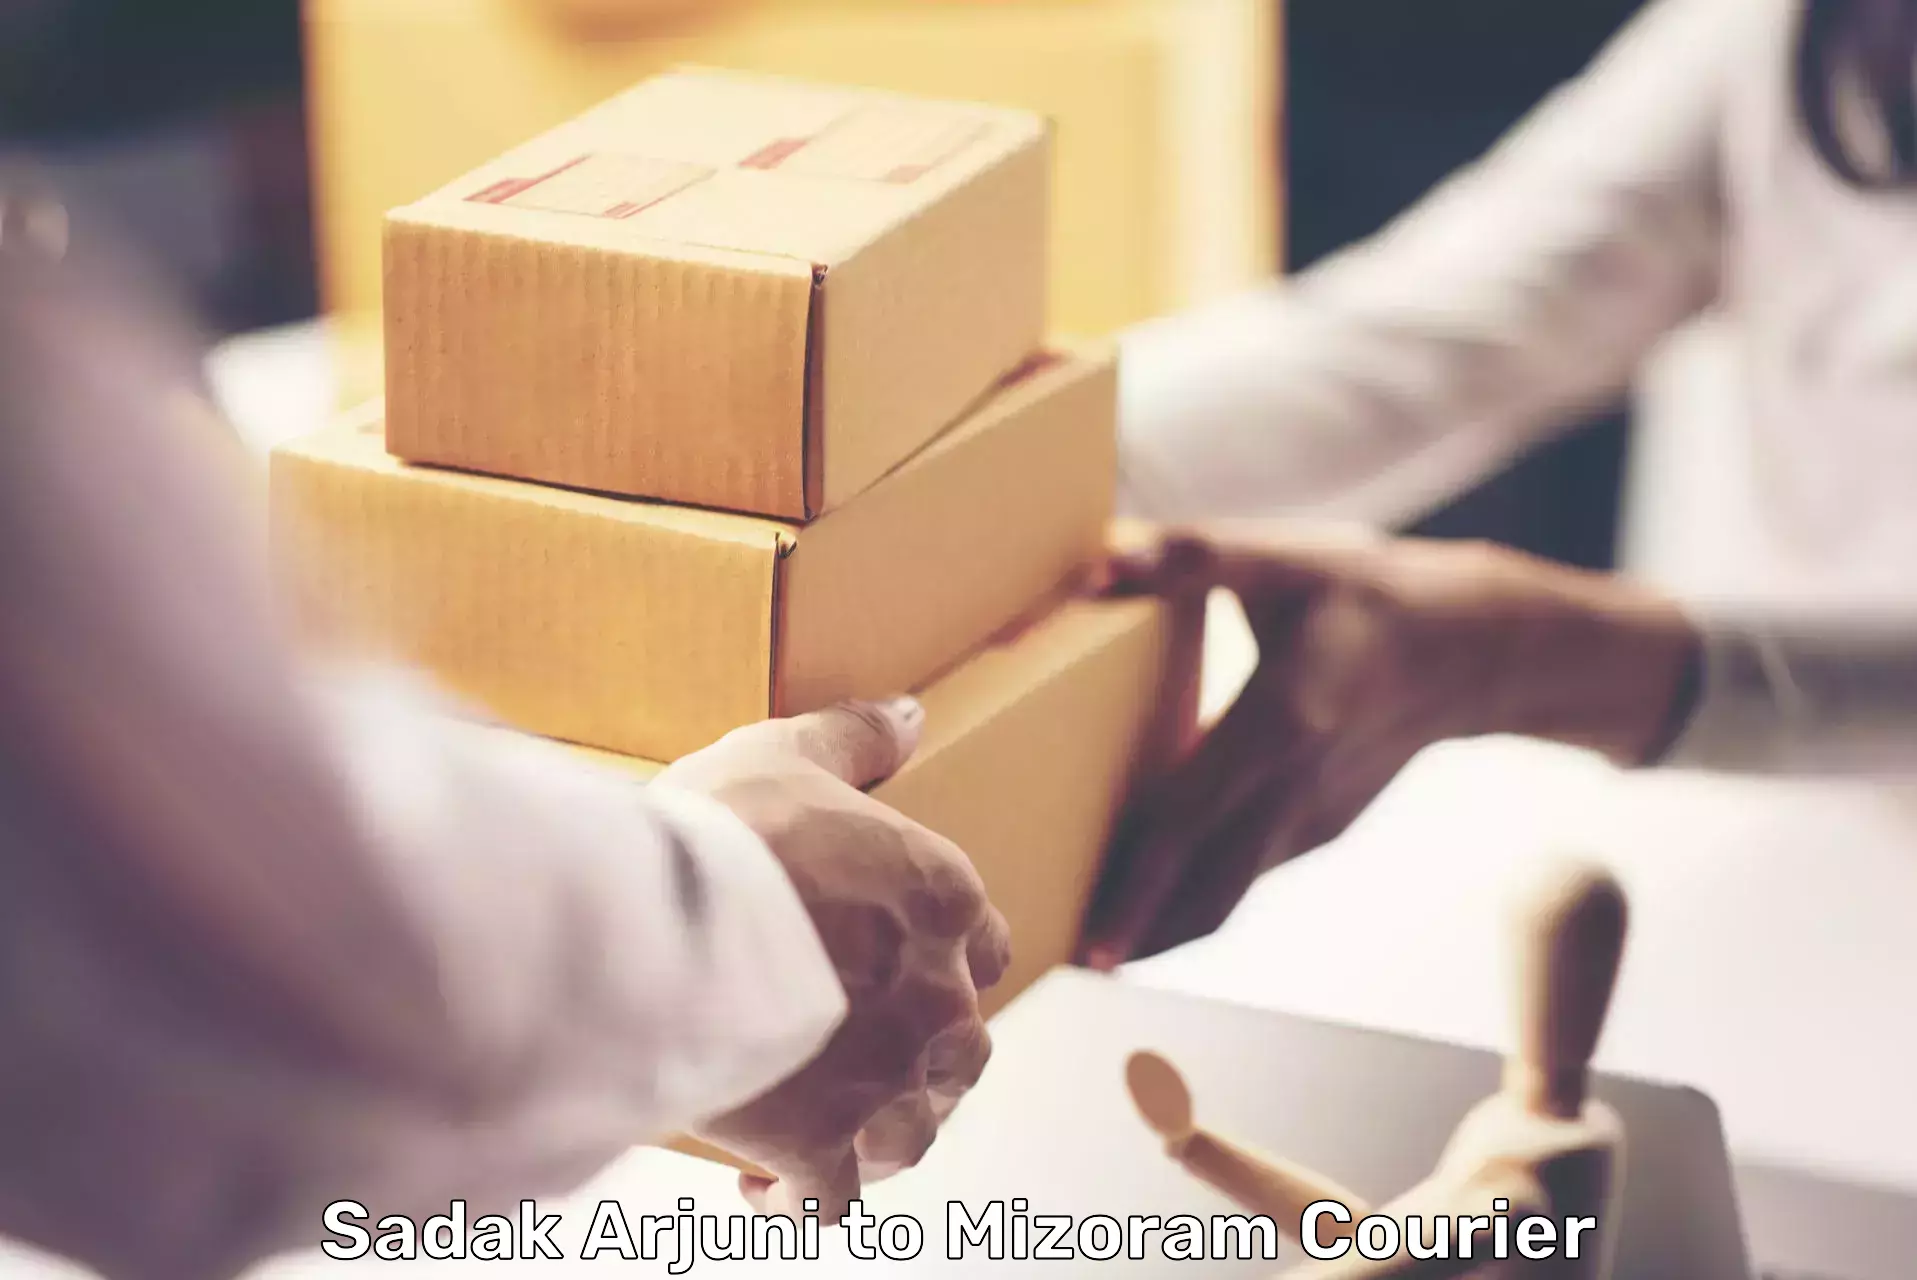 Commercial shipping rates in Sadak Arjuni to Mizoram